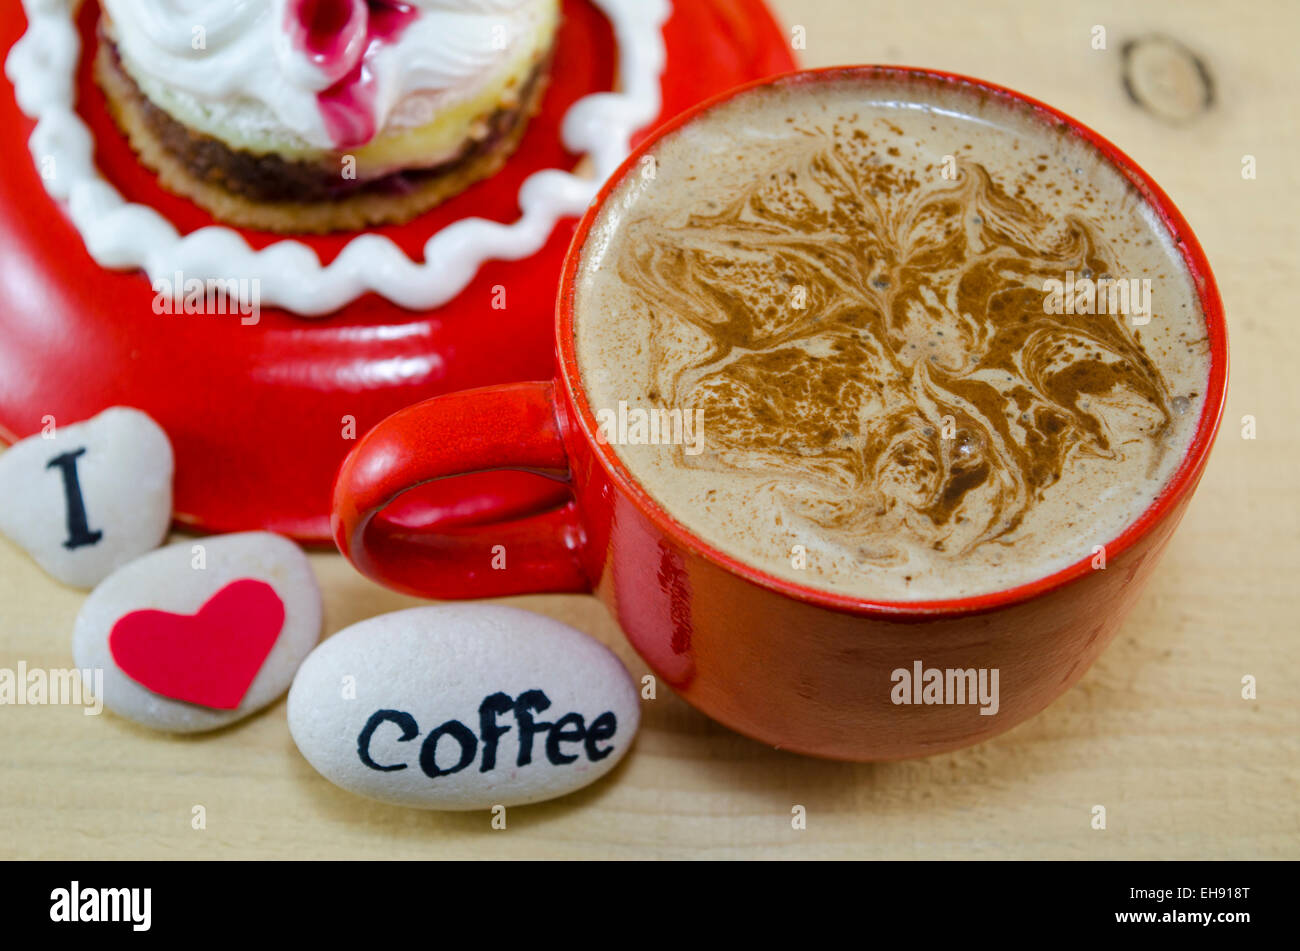 Rote Tasse Kaffee mit dekorierten Schaum und Kieselsteinen, die sagen: "Ich liebe Kaffee" Stockfoto